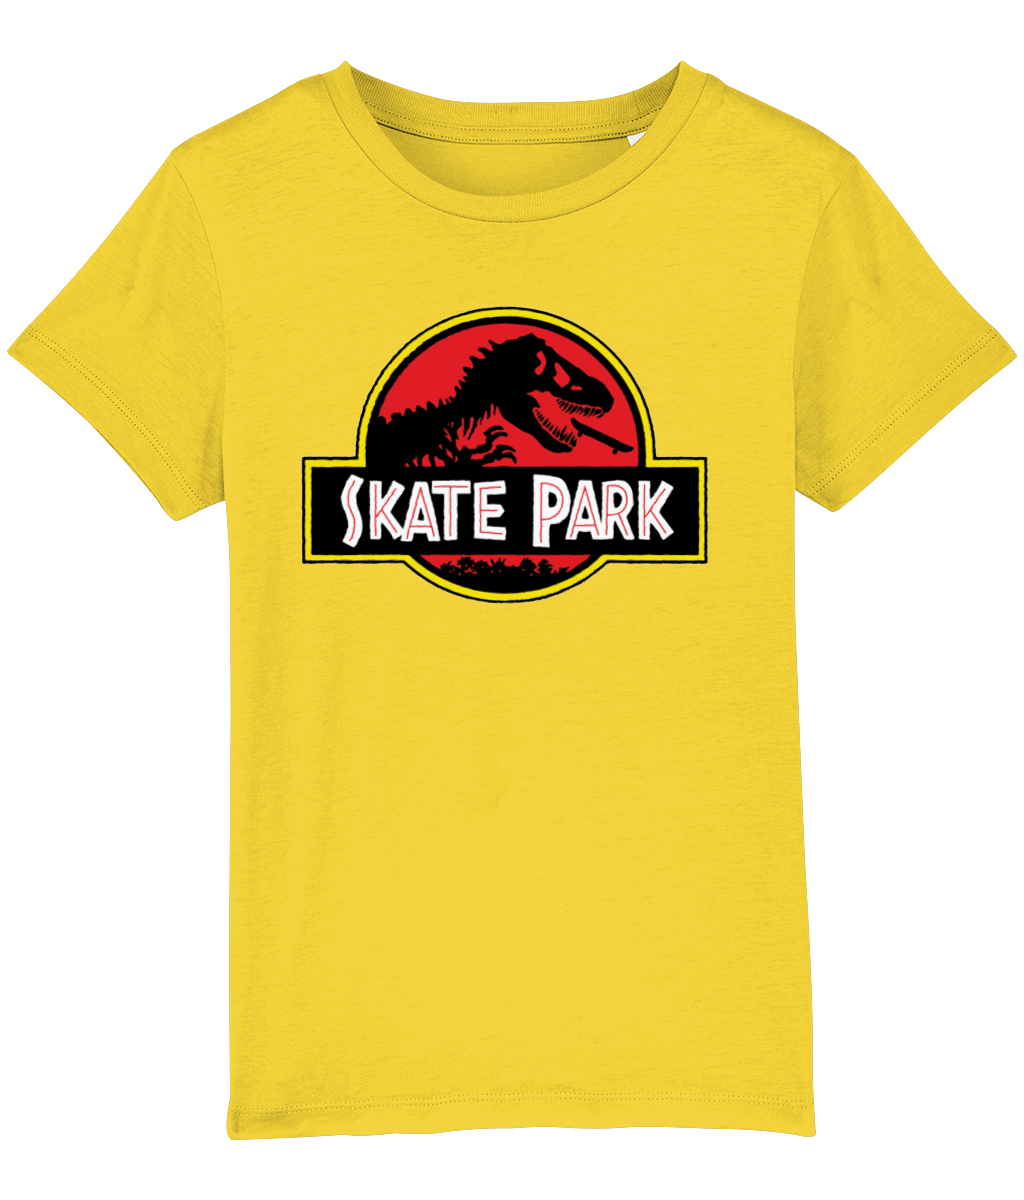 Skate Park Tee, Kids Ultimate Organic Cotton Kids TShirt, Skate for Life, Skate Park, Skate Clothing!